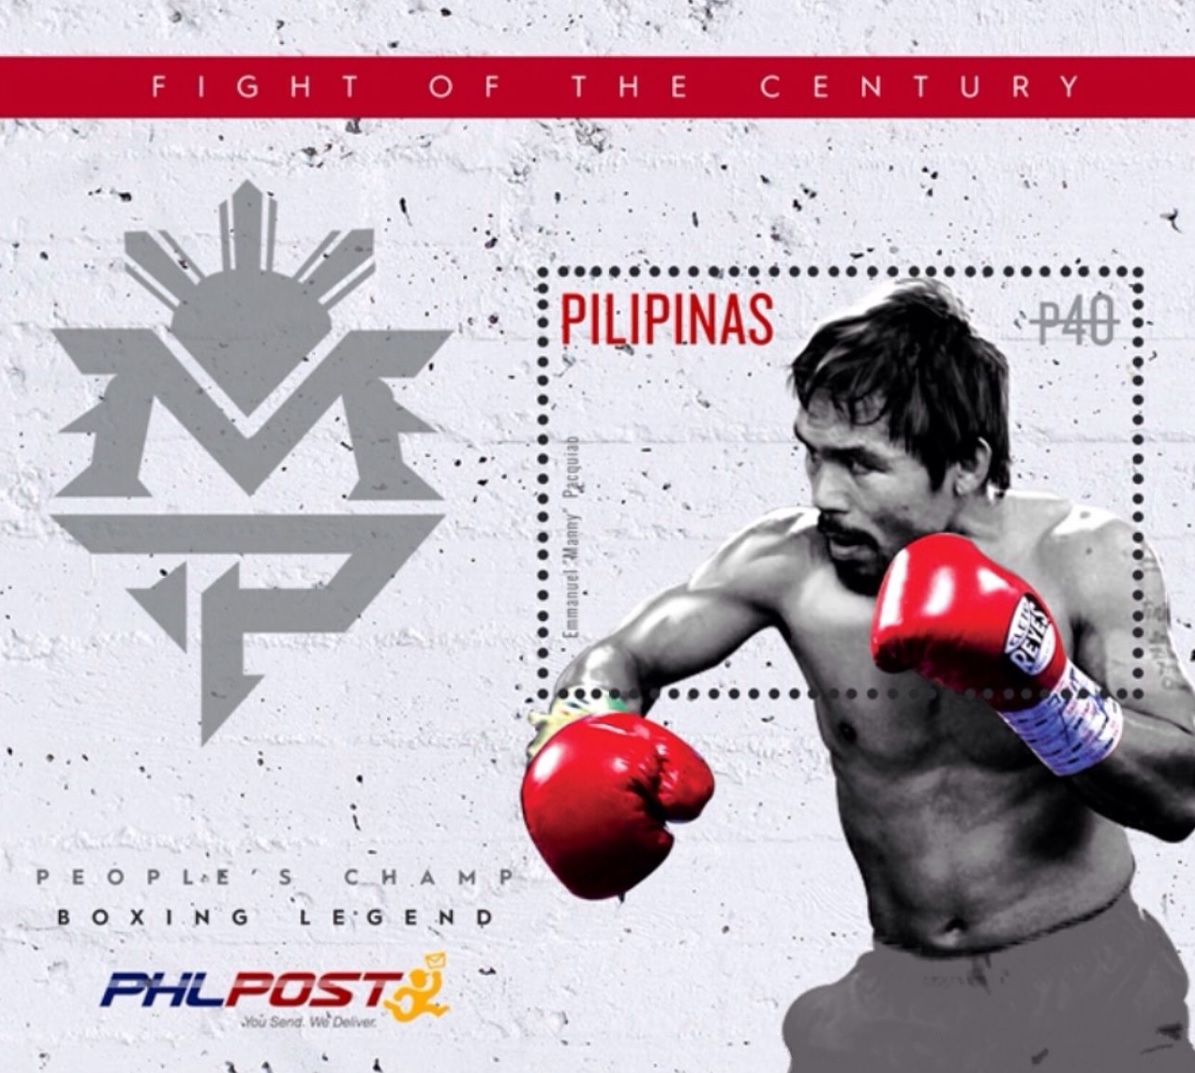 図４．切手のモデルとなったパッキャオ https://en.wikipedia.org/wiki/Manny_Pacquiao#/media/File:Manny_Pacquiao_2015_stampsheet_of_the_Philippines.jpg